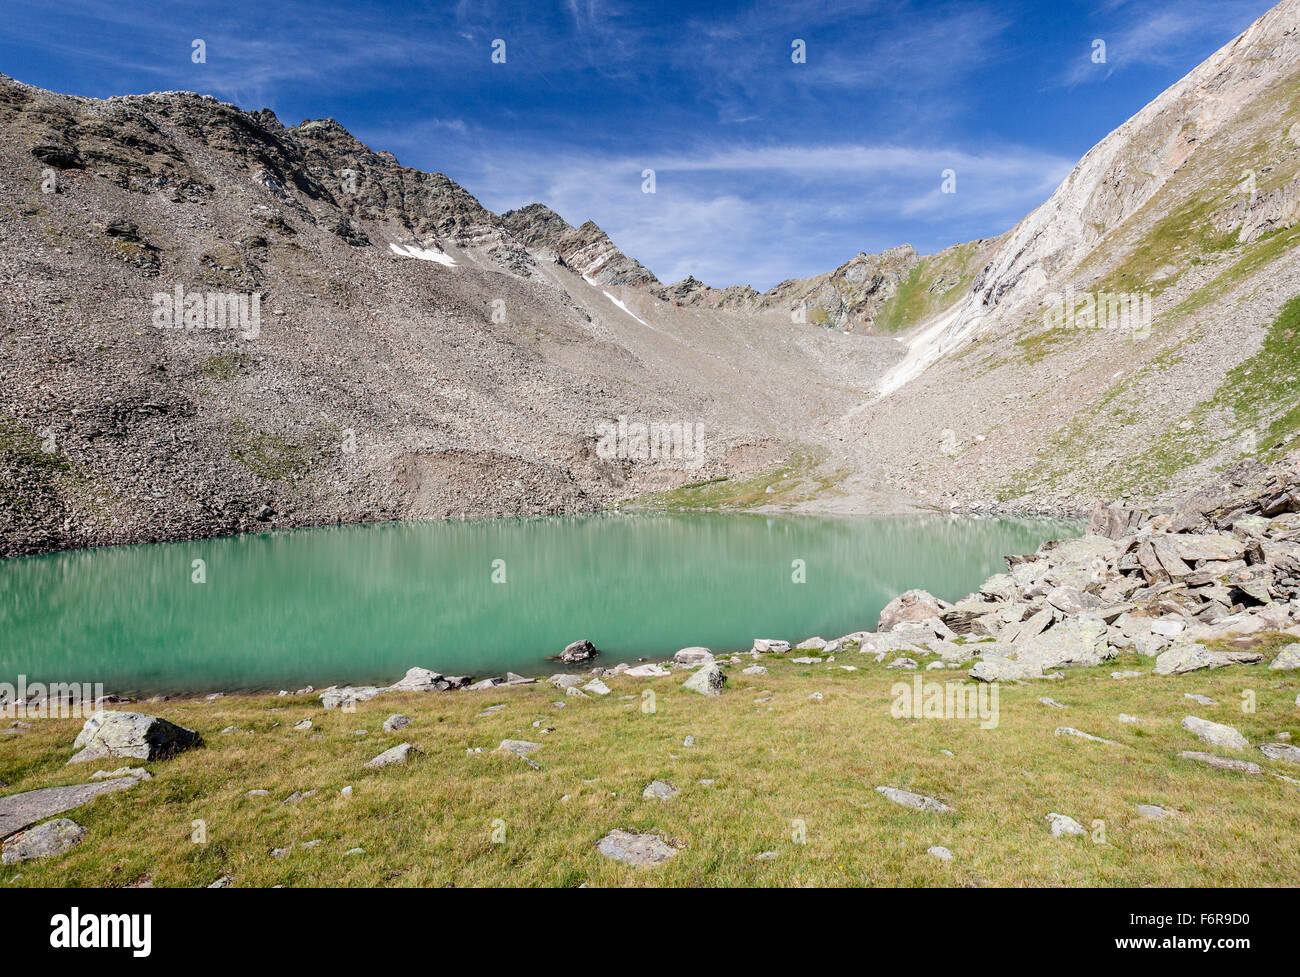 Covelano lago, muro nero dietro, Jennwand, Provincia del Sud Tirolo, regione Trentino Alto Adige, Alpi, Italia Foto Stock